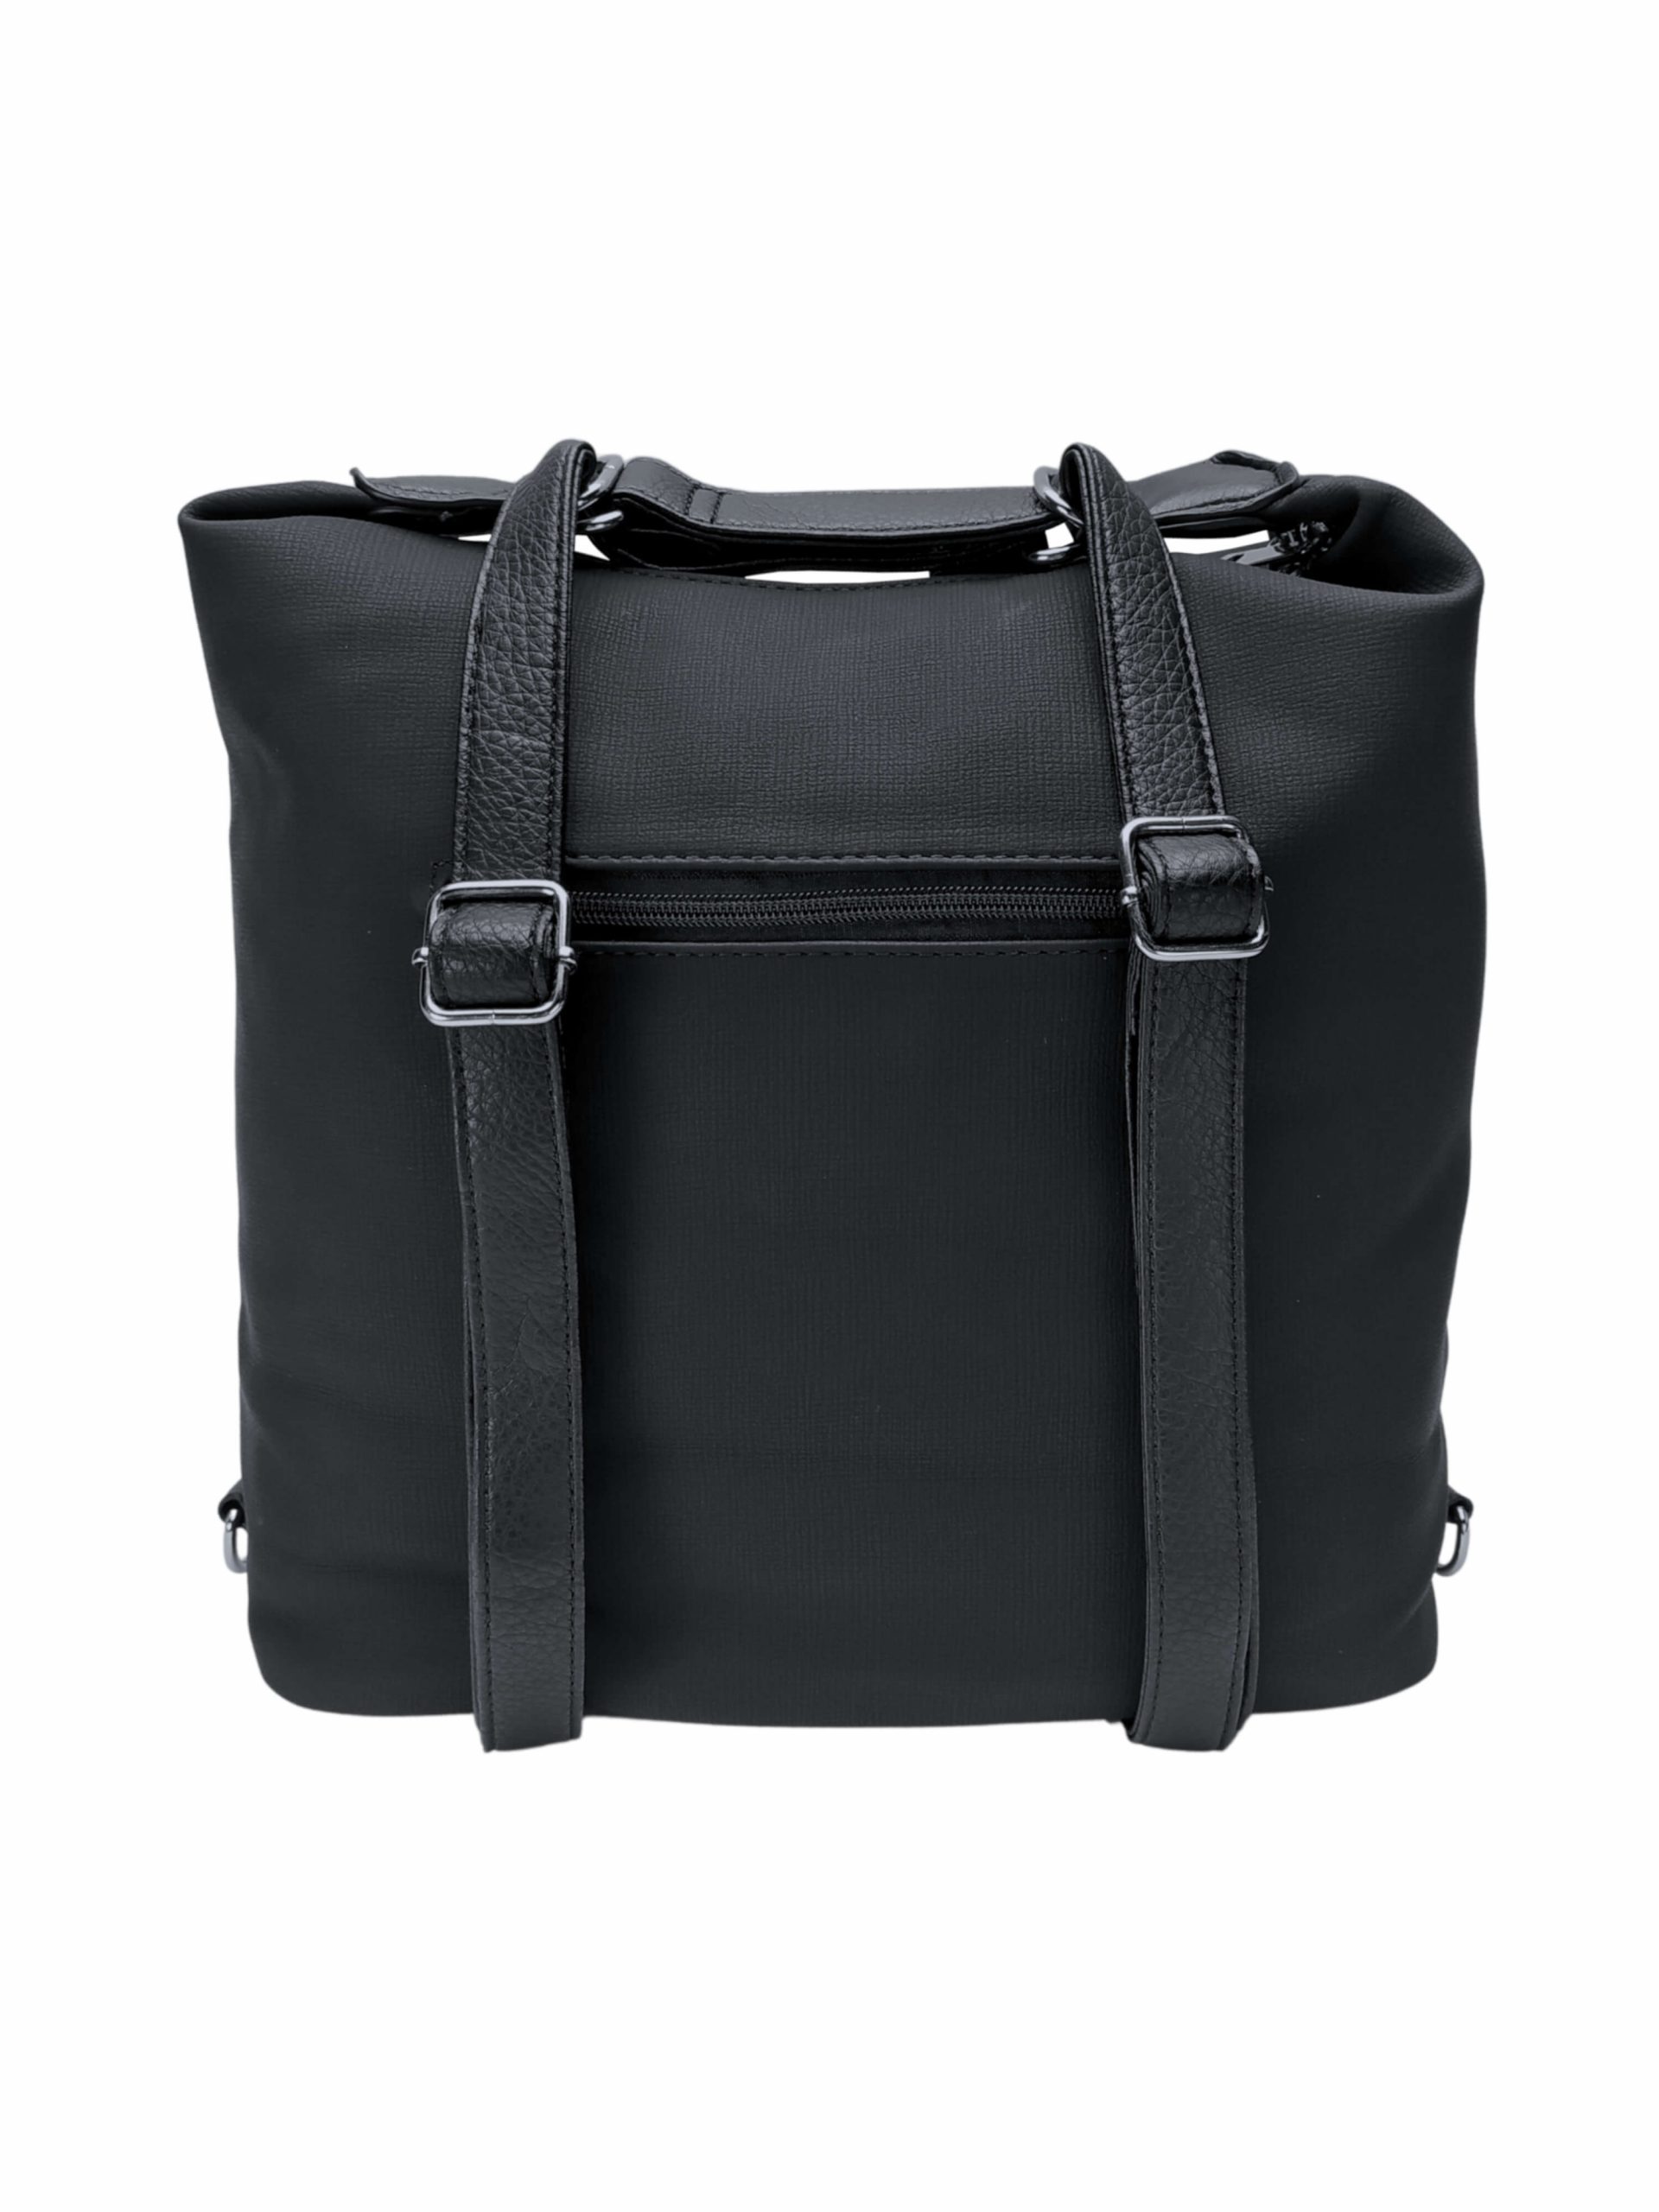 Velká černá kabelka a batoh 2v1 s kapsami, Tapple, H181175N, zadní strana kabelky a batohu 2v1 s popruhy